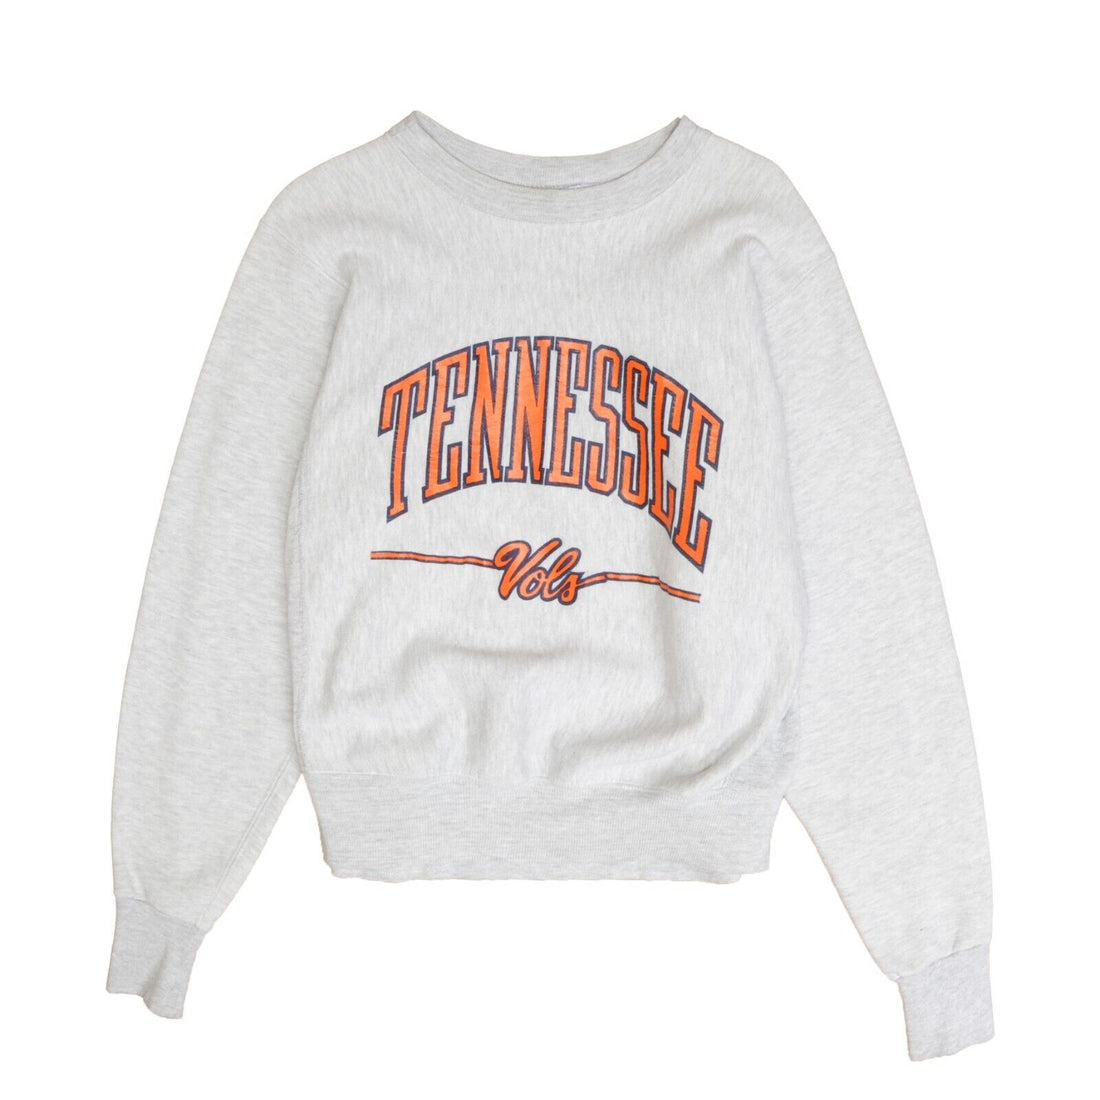 Vintage Tennessee Volunteers Sweatshirt Crewneck Size Medium Gray Vols NCAA